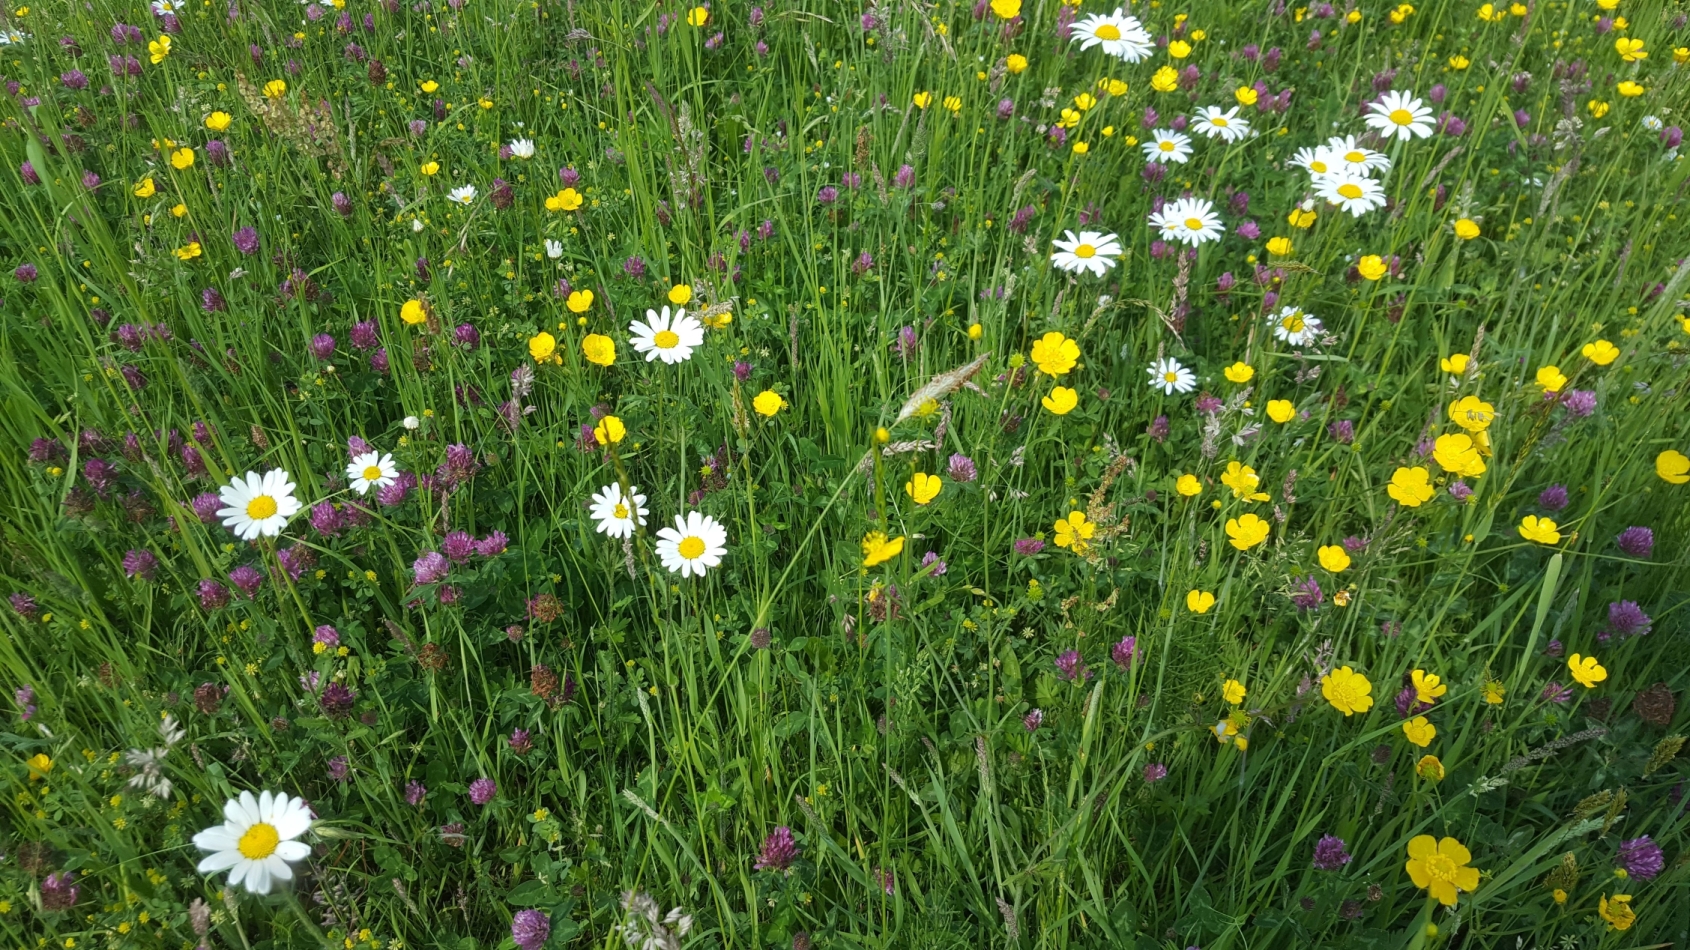 Ingezoomde foto van een grasveld met witte en gele bloemen